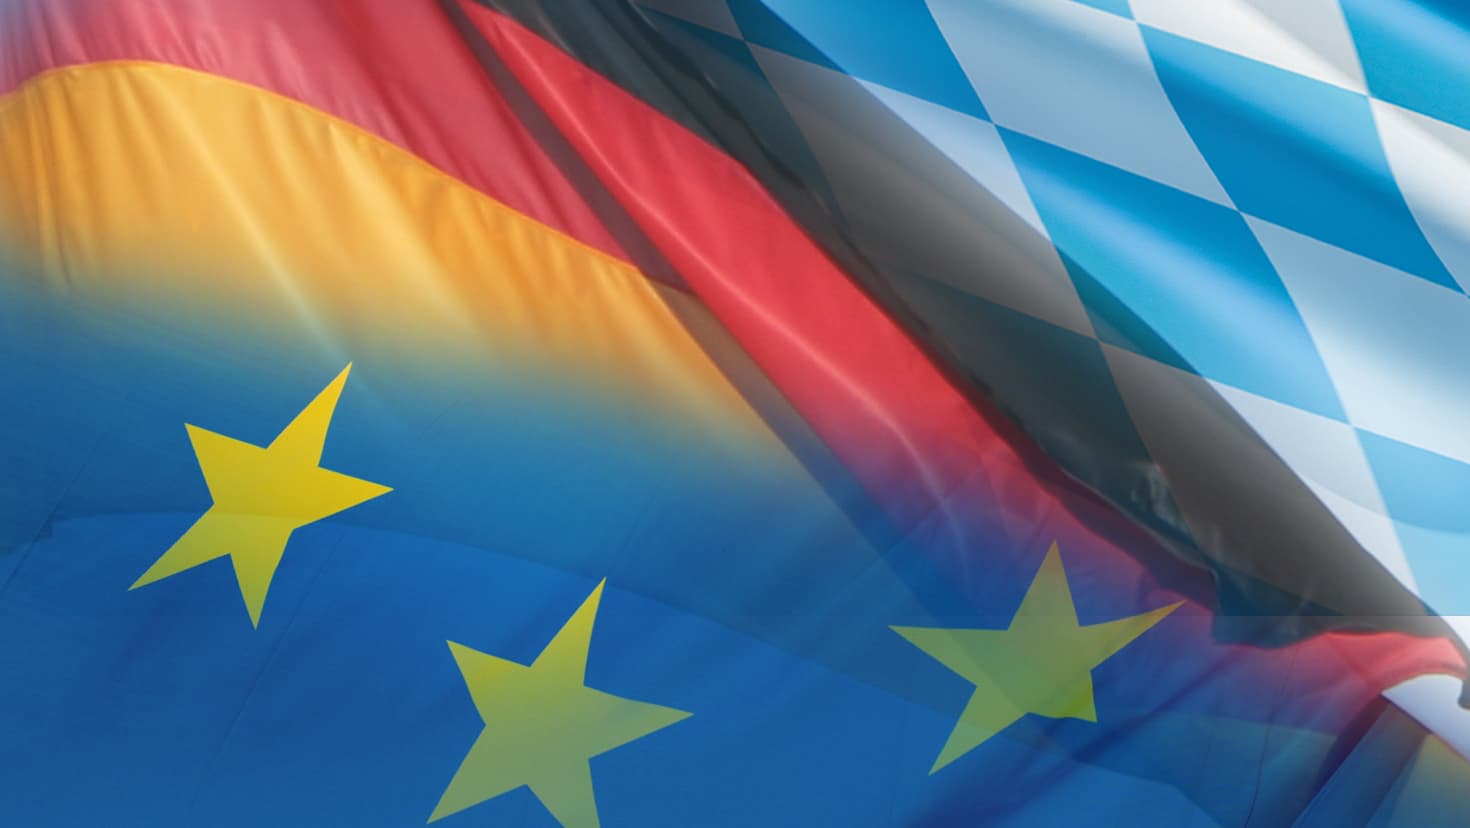 Die Flaggen des Freistaats Bayern, der Bundesrepublik Deutschland und der Europäischen Union (von oben nach unten).